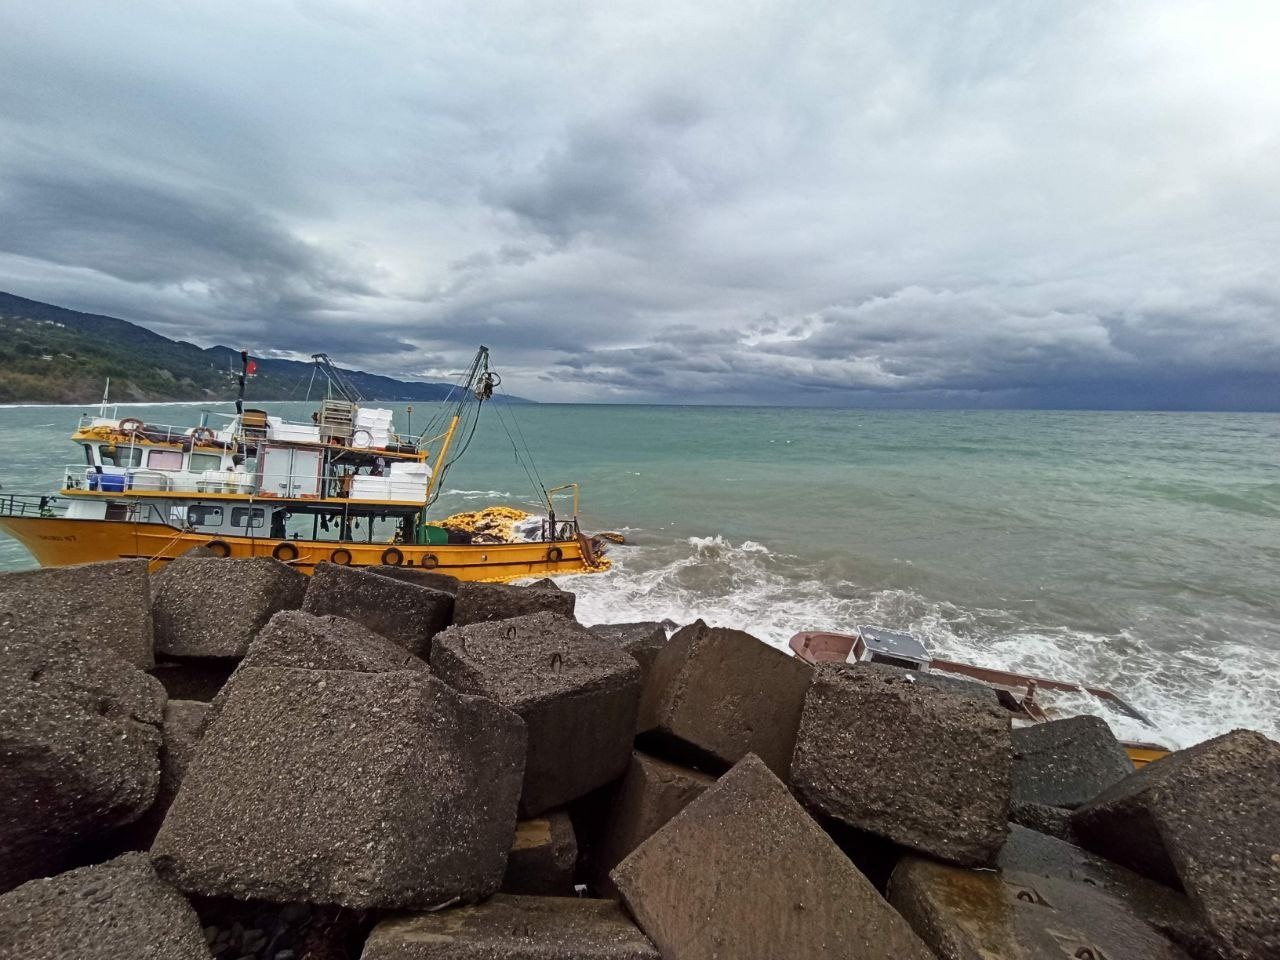 Samsun'dan Kastamonu açıklarına balık tutmak için giden tekne, kayalıklara çarptı, denize düşen balıkçılar son anda kurtuldu